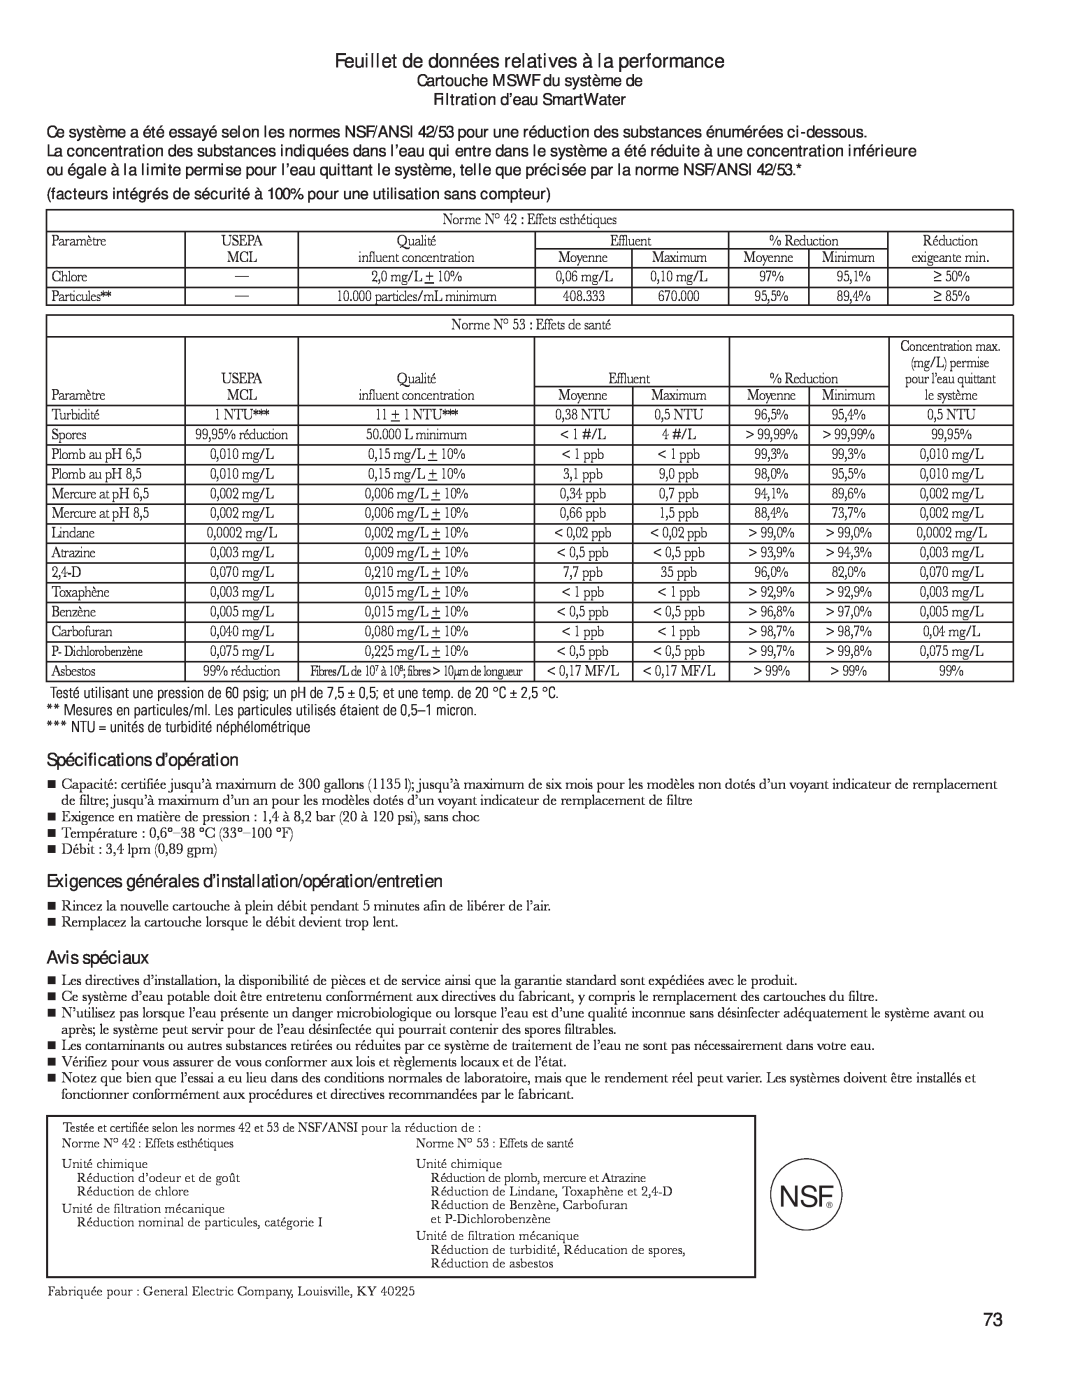 GE 200D8074P044 Feuillet de données relatives à la performance, Spécifications d’opération, Avis spéciaux 